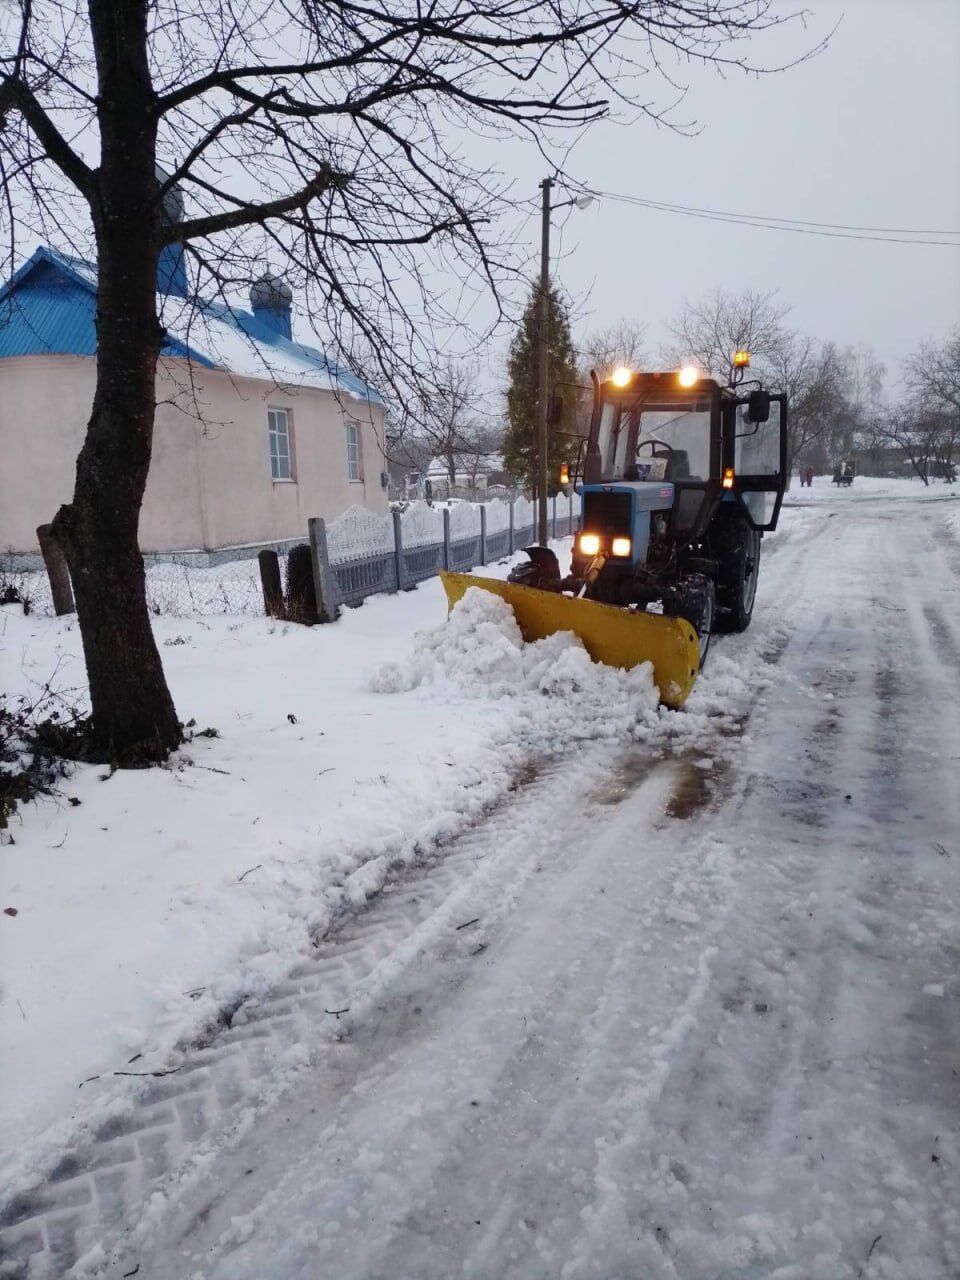 Часть Украины замело снегом: ситуация на дорогах усложнена, дальше будет хуже. Видео